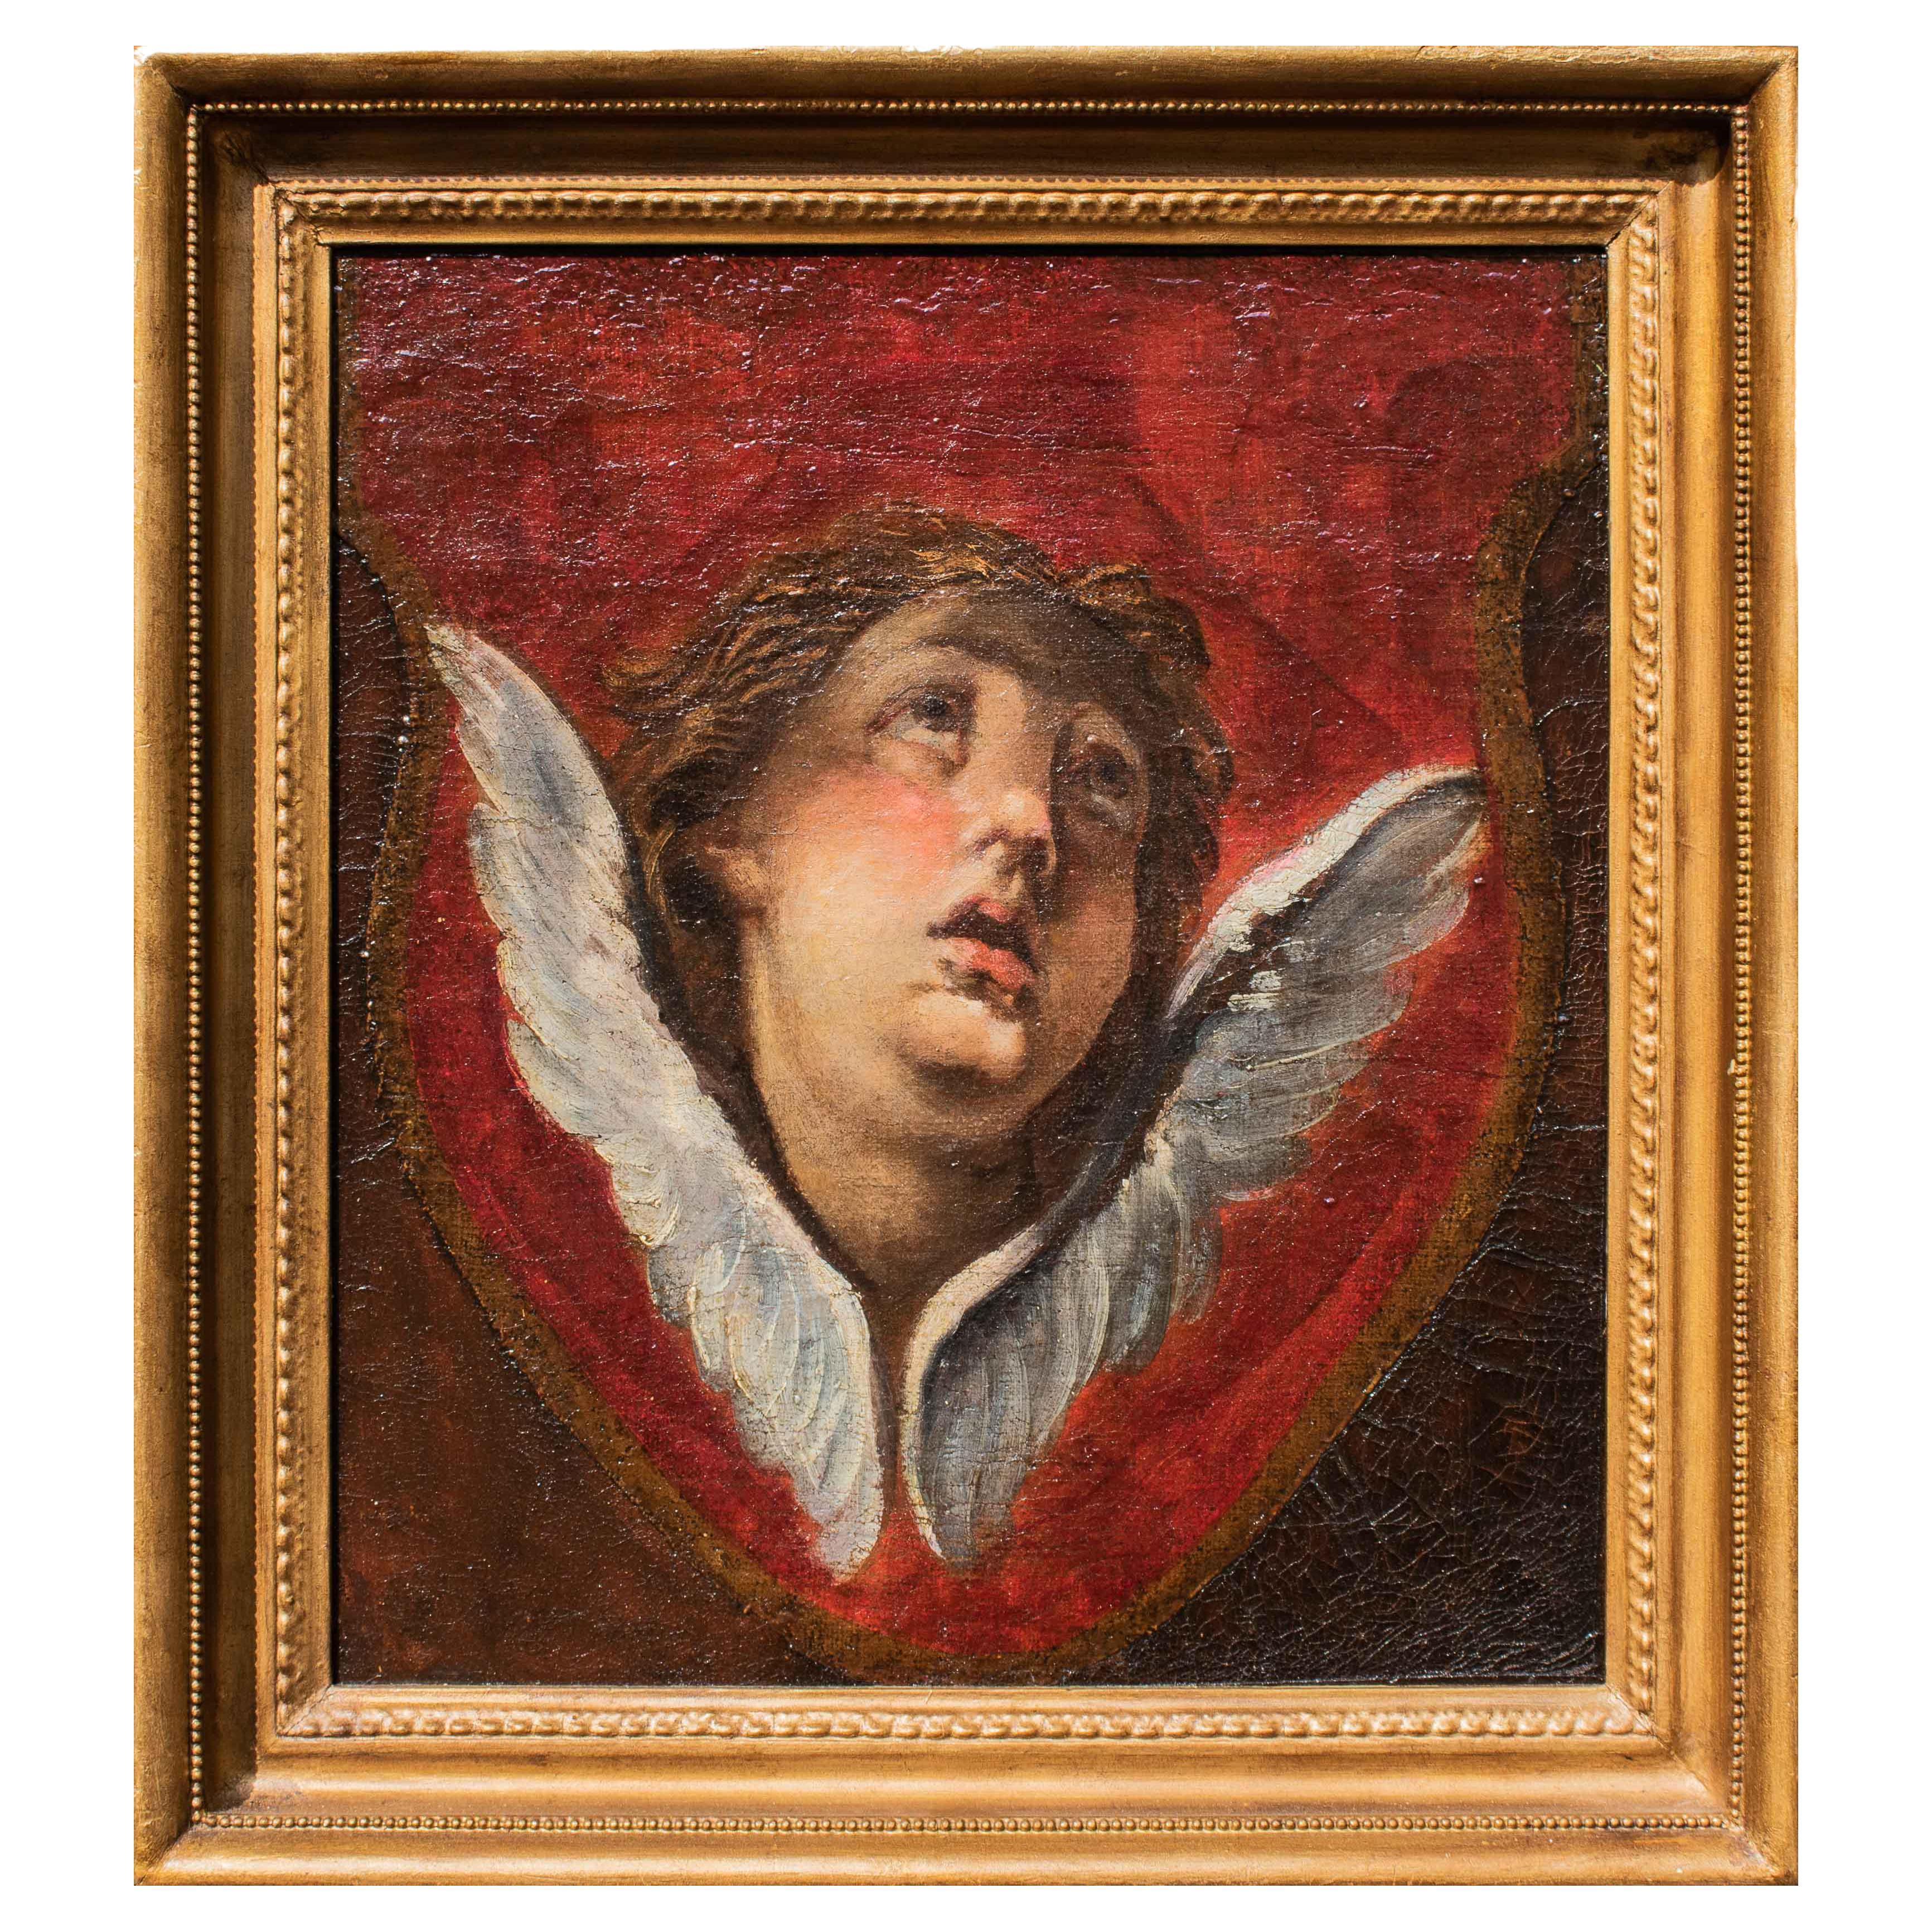 Peinture à l'huile sur toile du 18ème siècle représentant une tête de chérubin